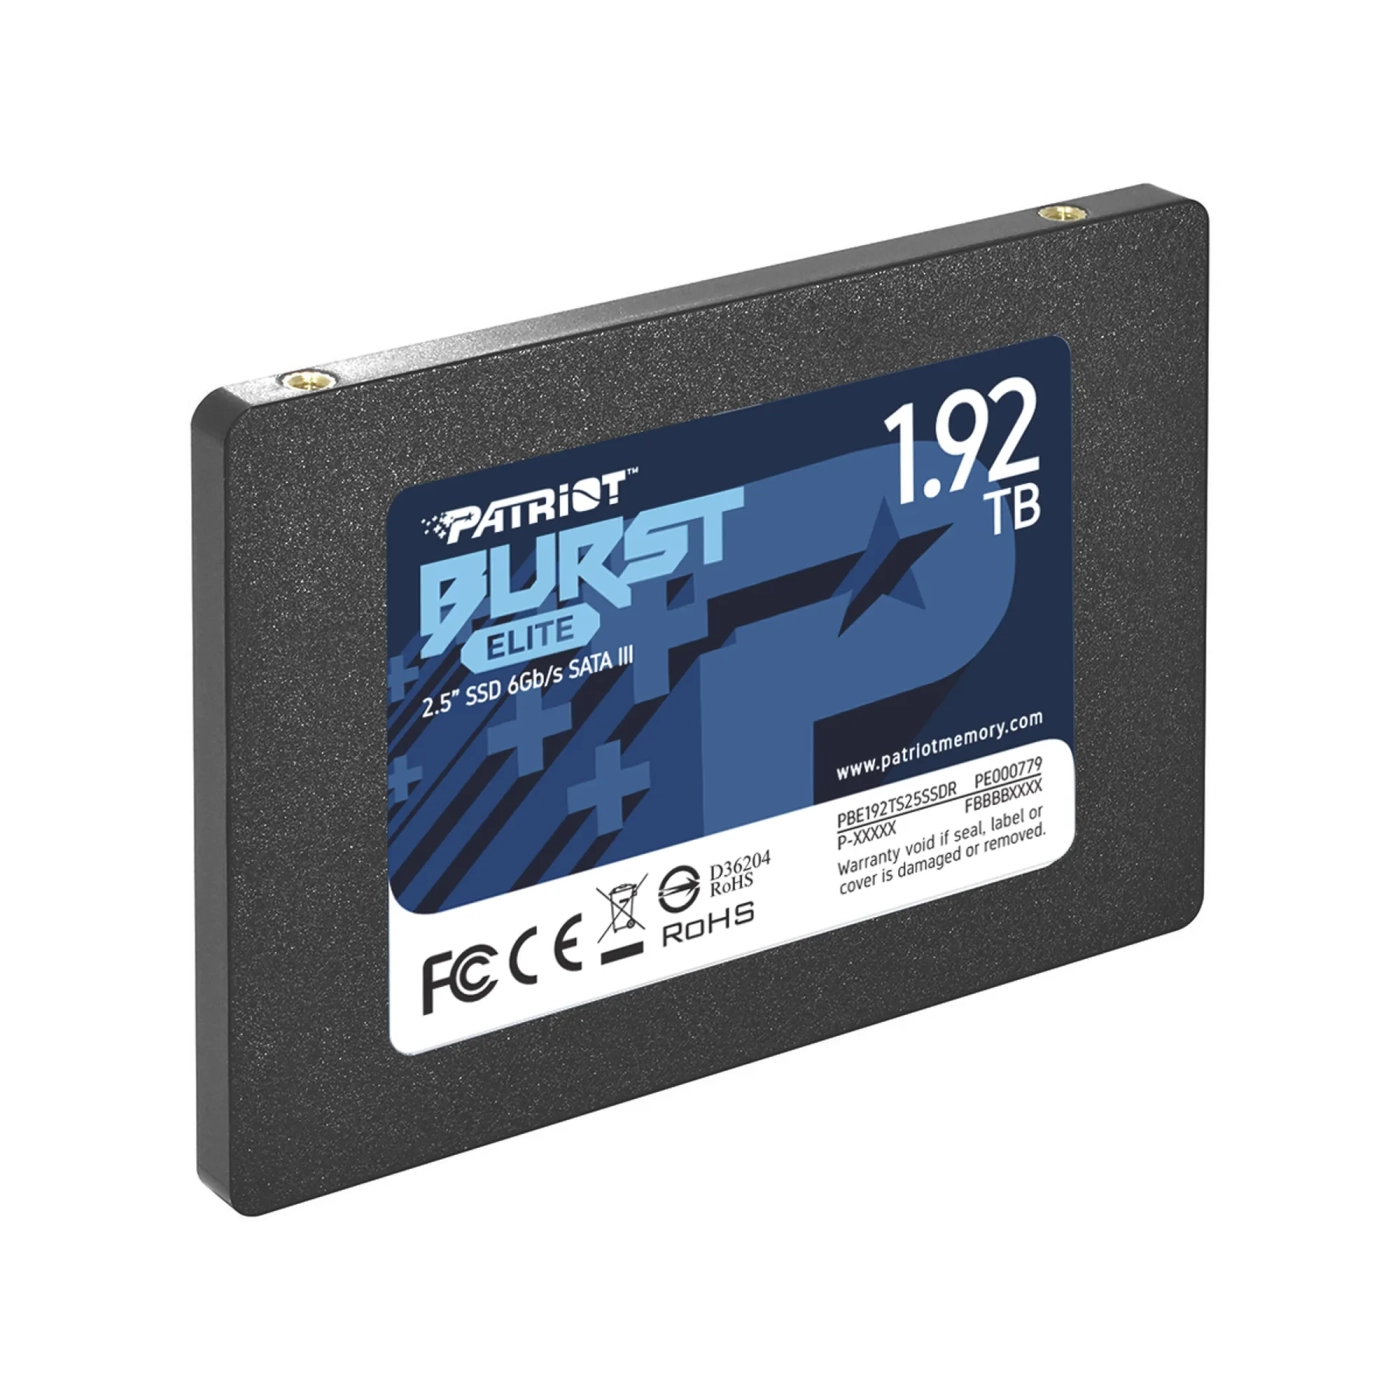 Купить SSD диск Patriot Burst Elite 1.92TB 2.5" SATA (PBE192TS25SSDR) - фото 3